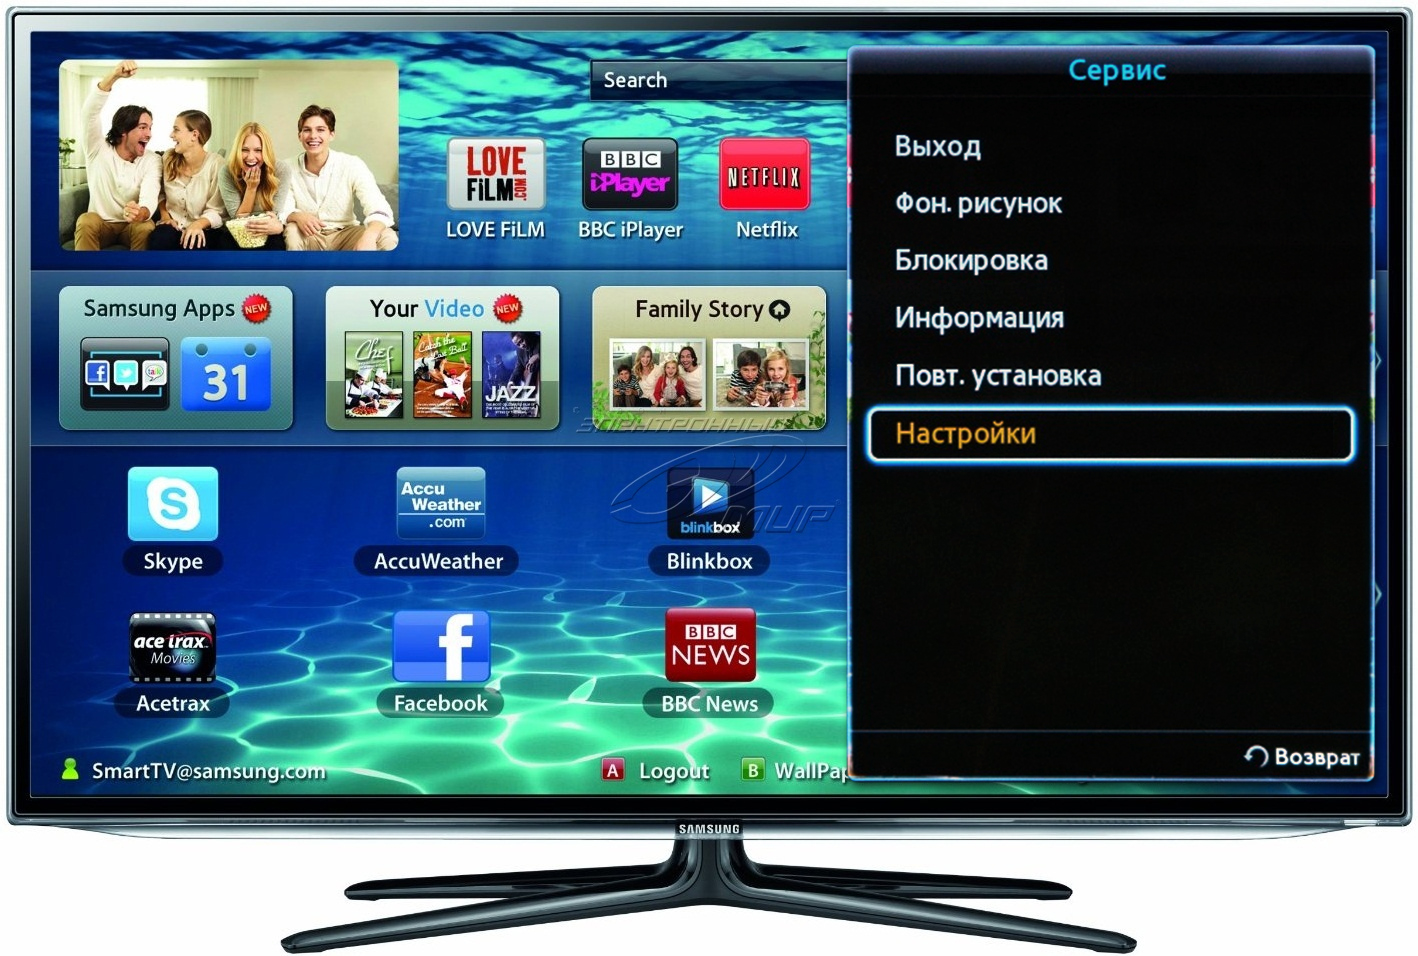 Зайти на телевизор самсунг. Как настроить смарт телевизор Samsung. Телевизор самсунг смарт ТВ. Samsung TV DLNA. Как настроить смарт ТВ на телевизоре самсунг.